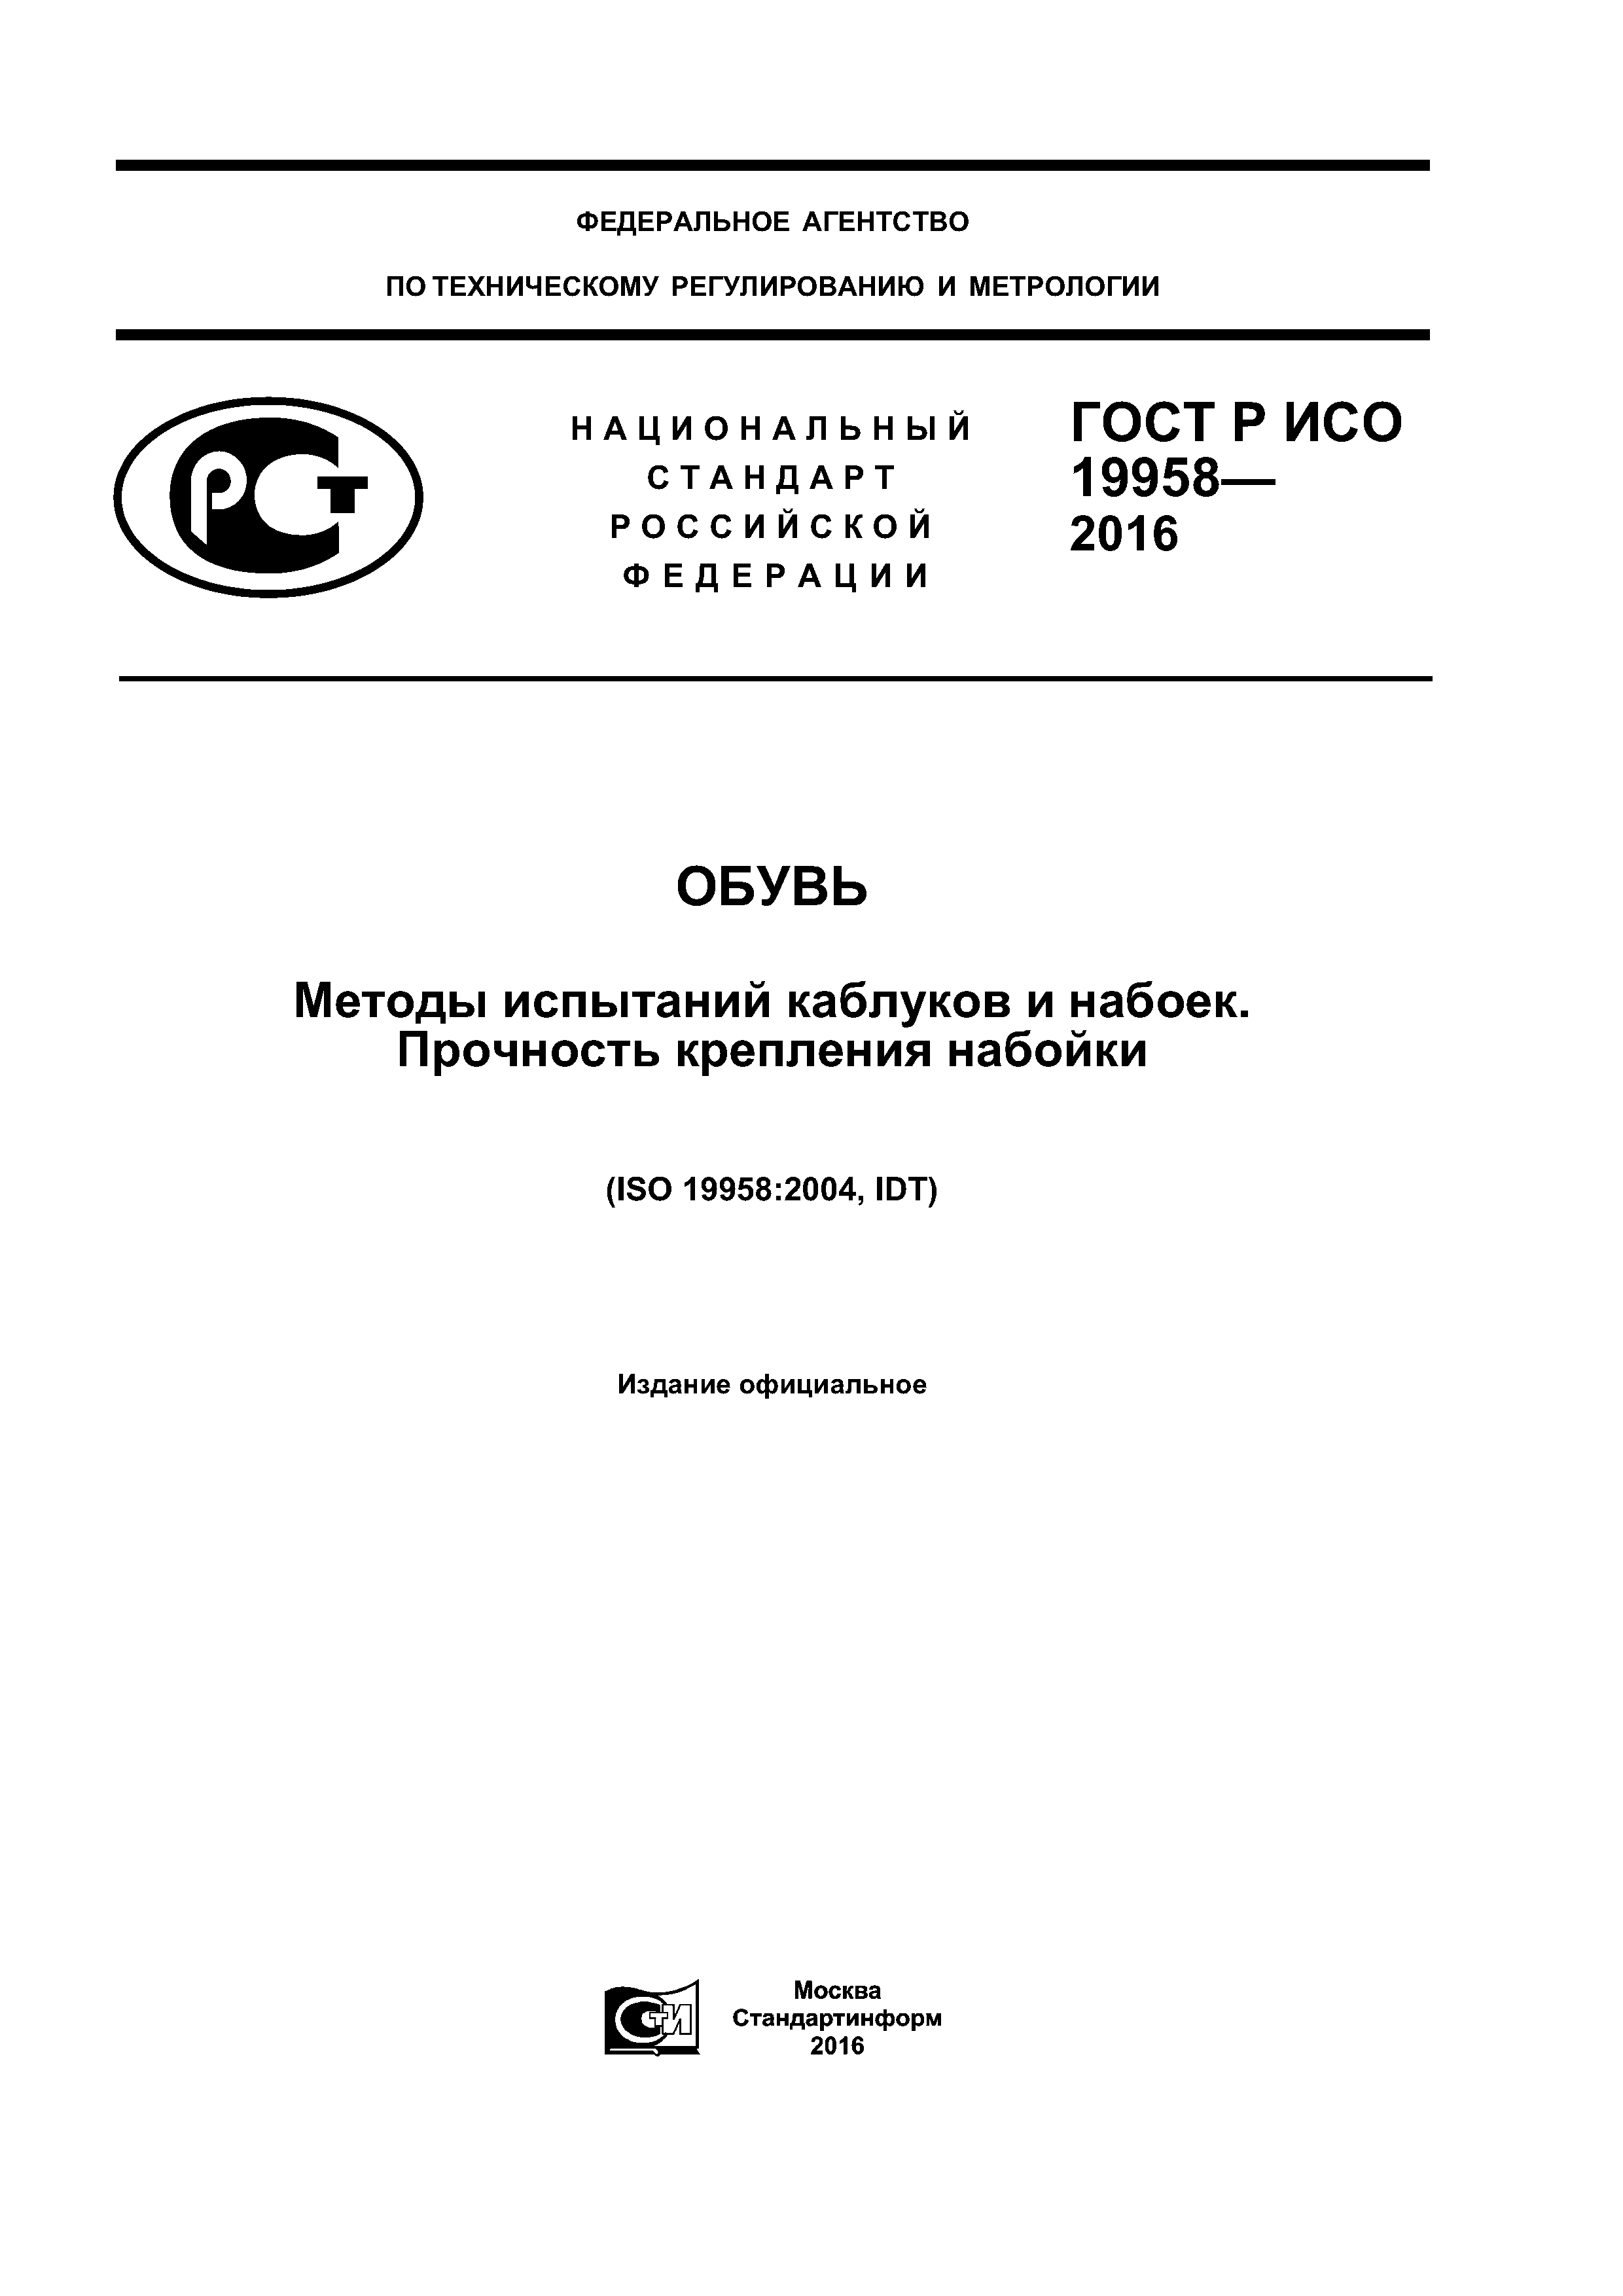 ГОСТ Р ИСО 19958-2016